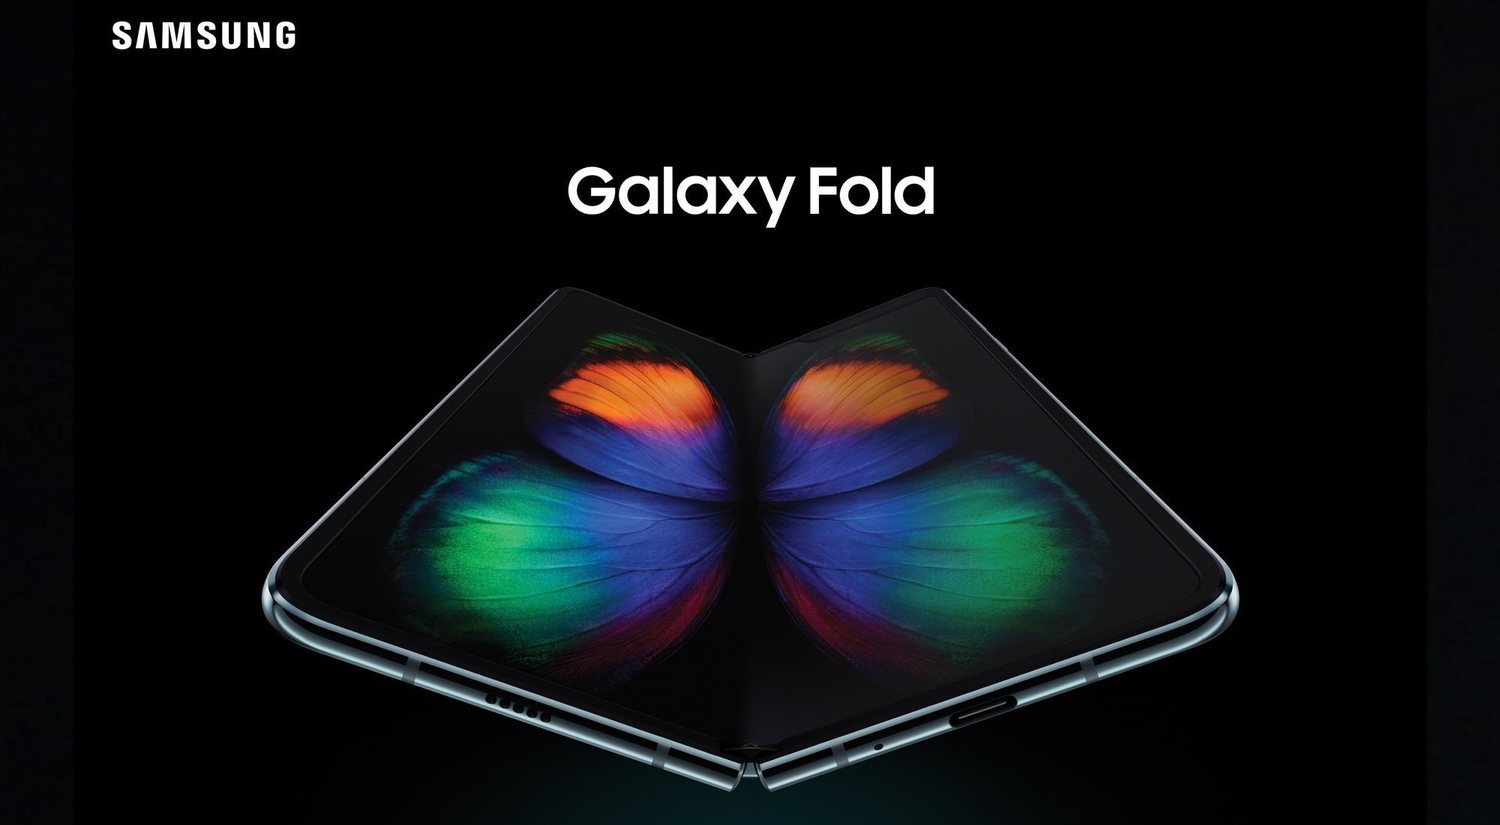 Samsung Galaxy Fold ya es oficial: errores corregidos y precio en Europa